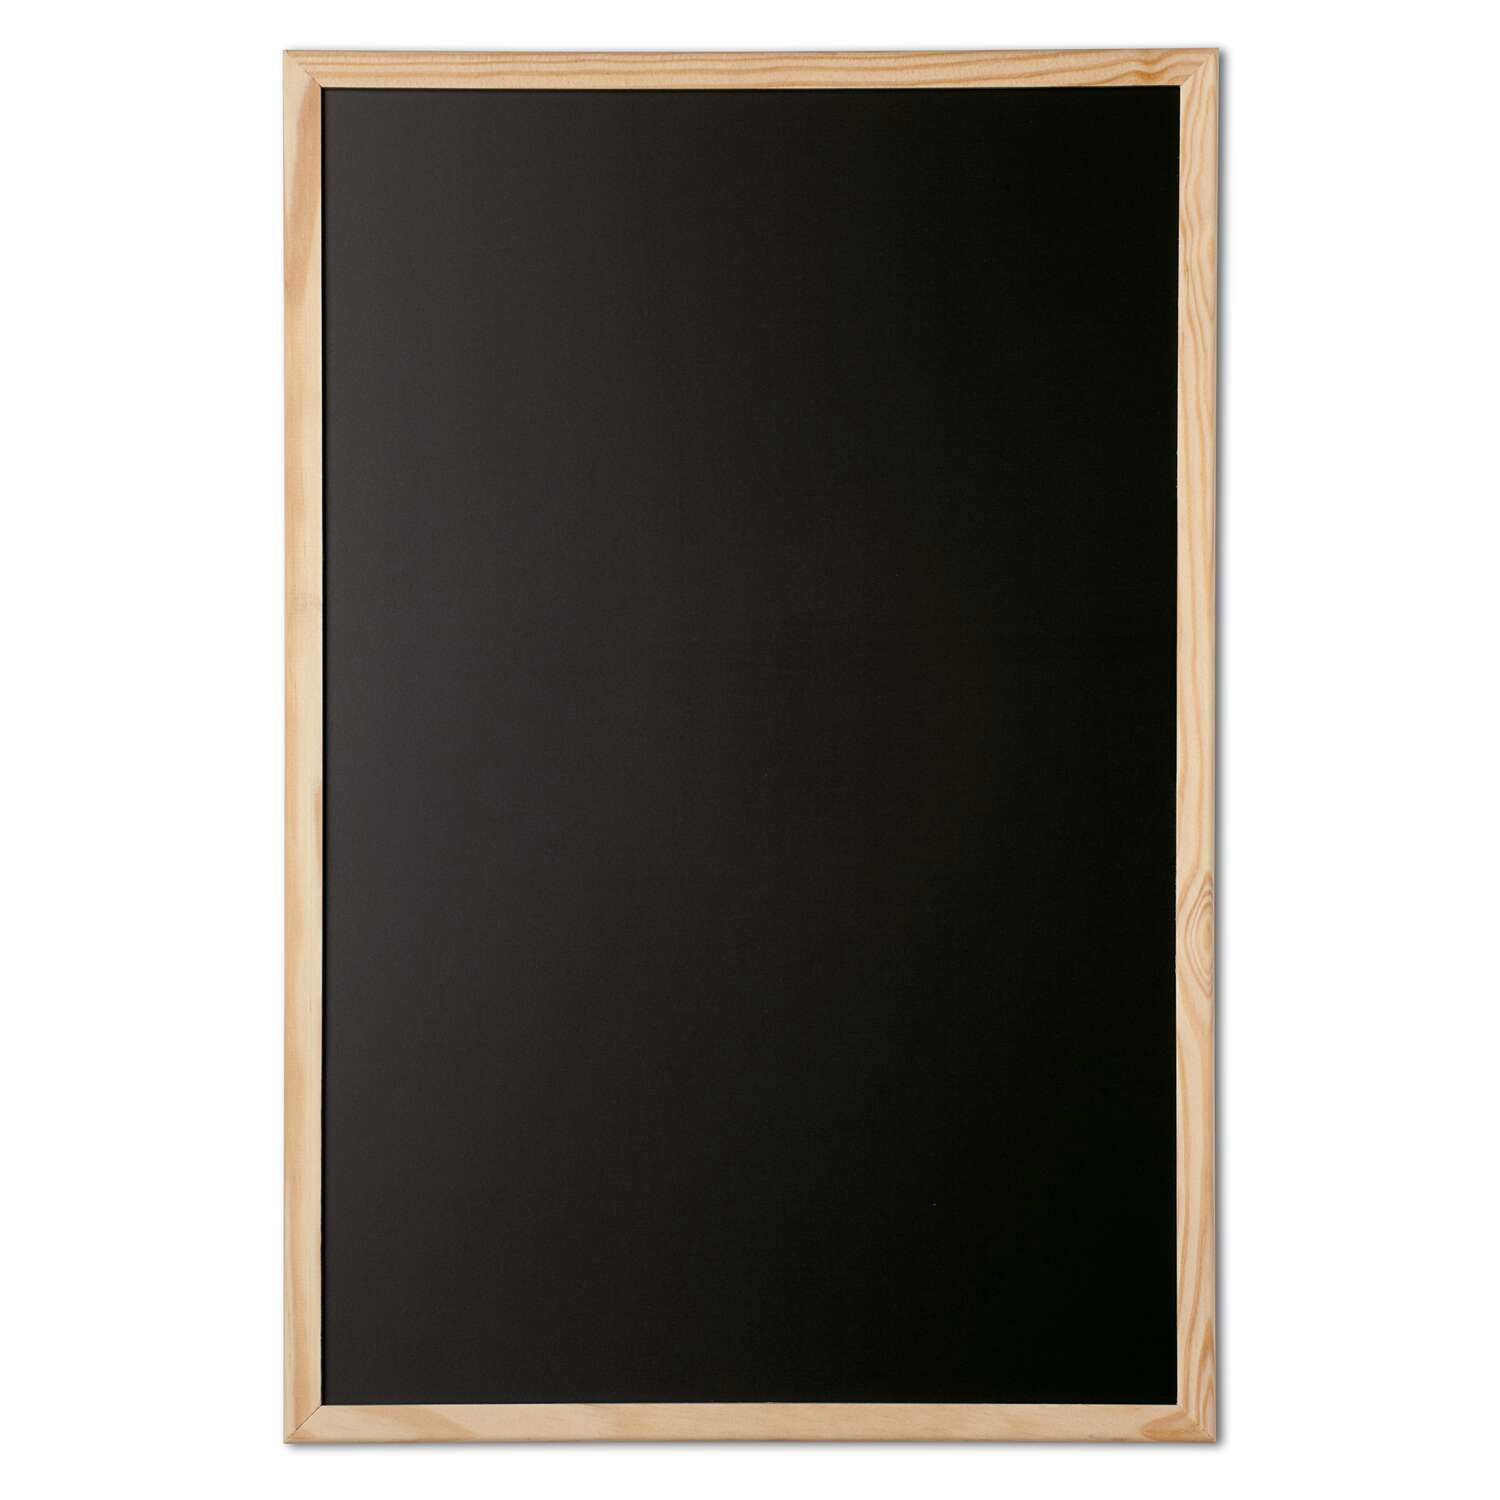 Tableau pour craie, cadre bois, 60 x 90 cm